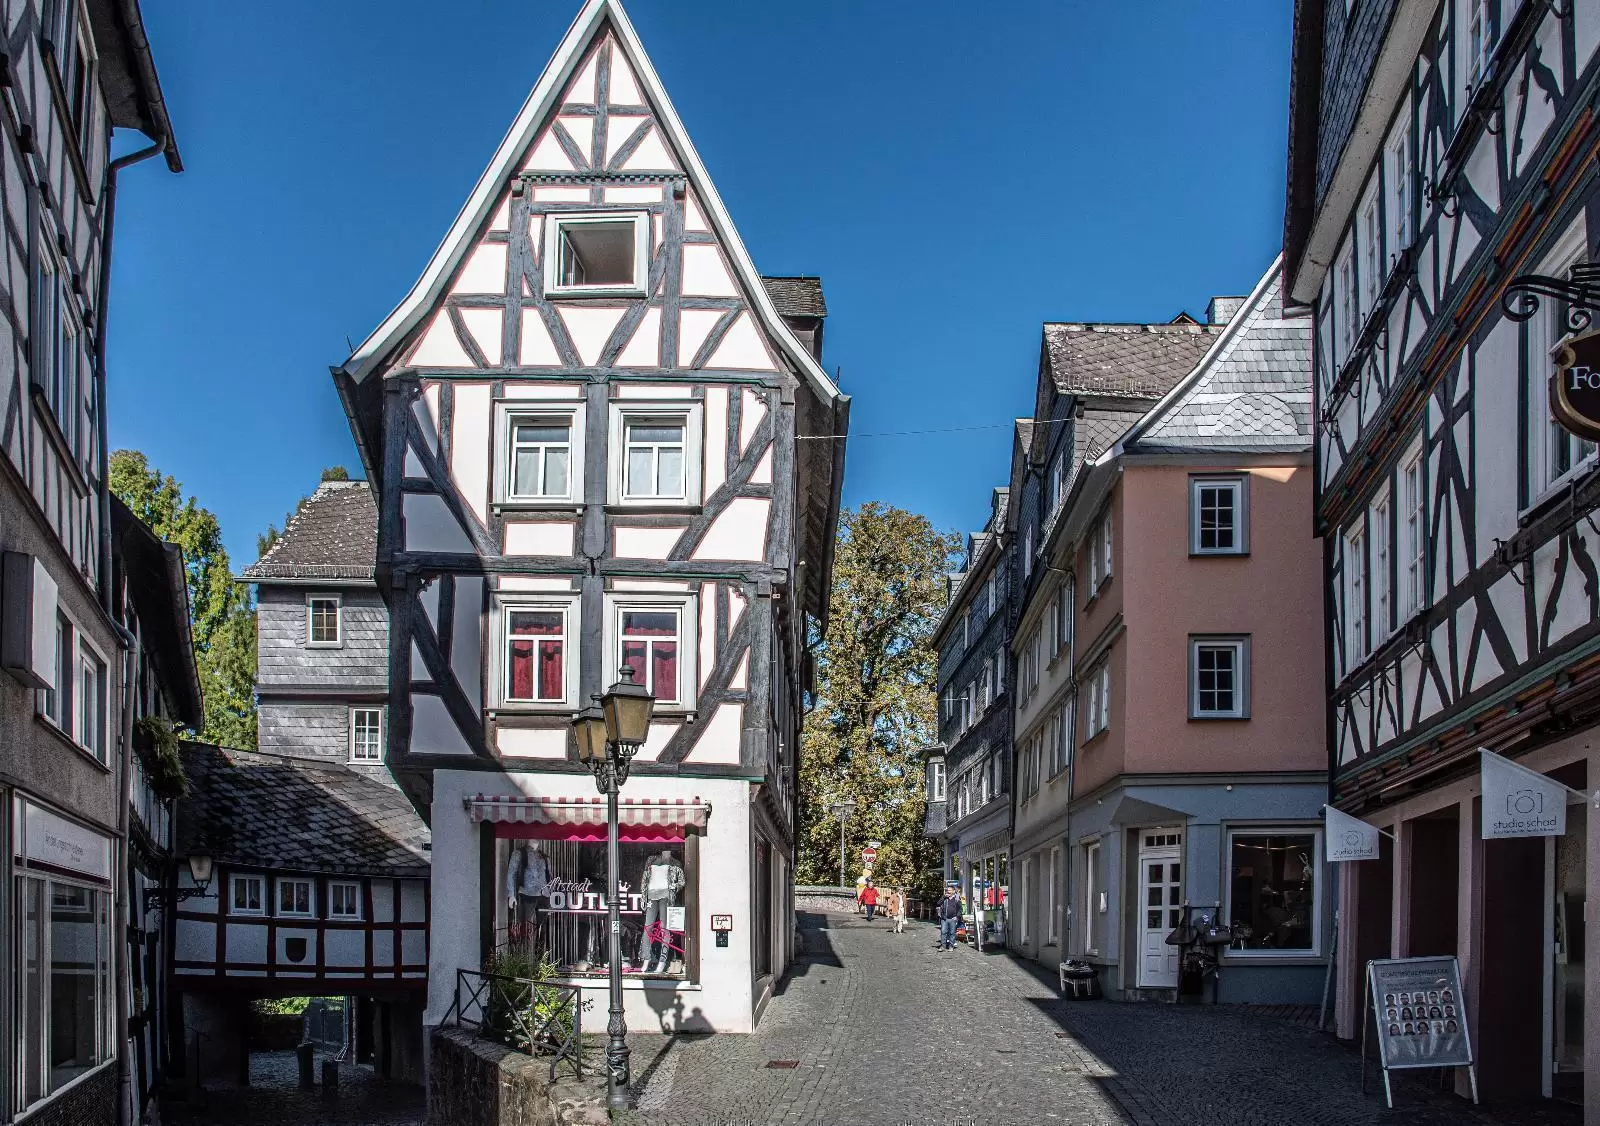 Wetzlar Old Town